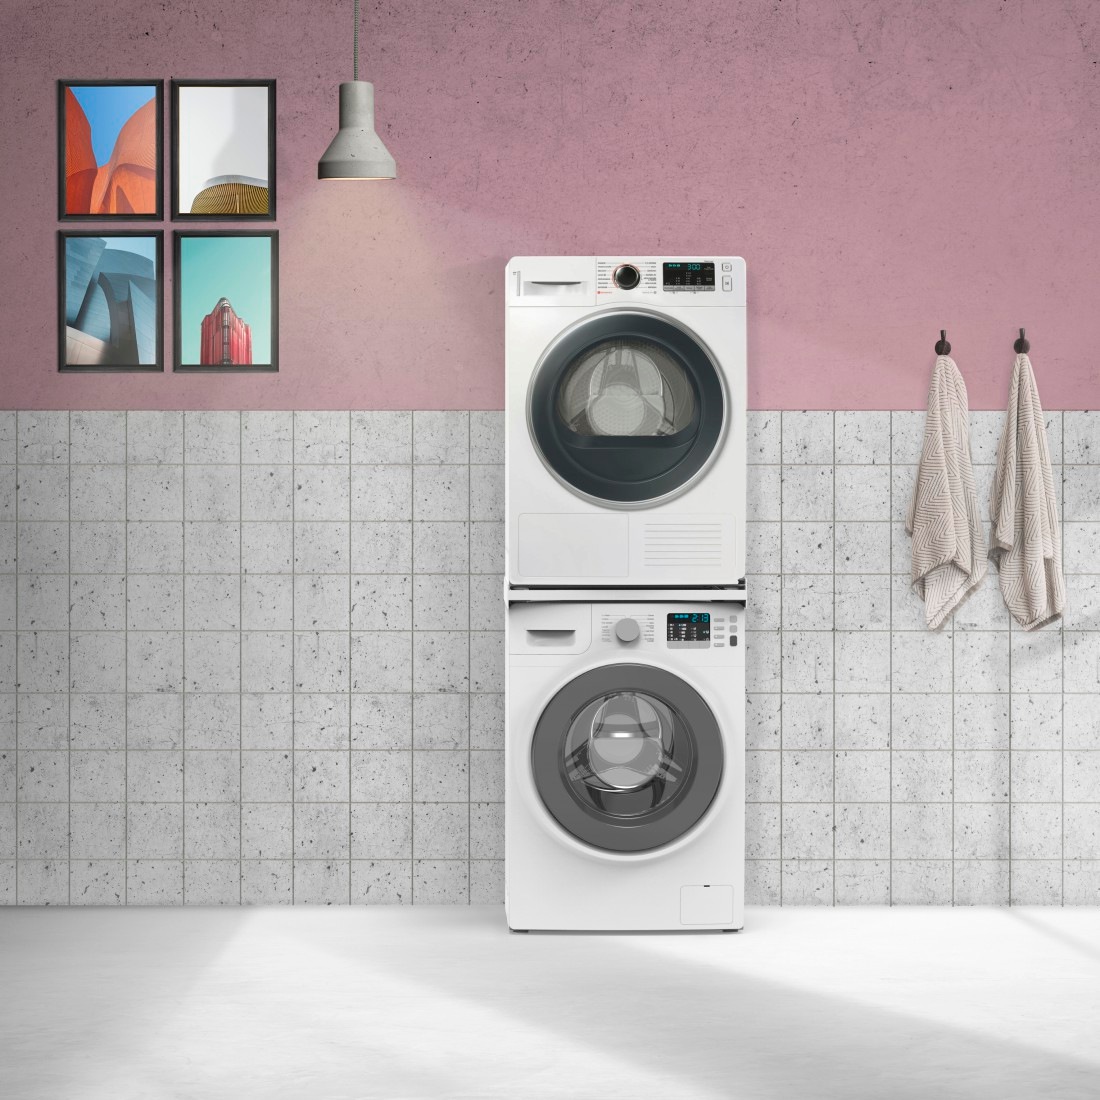 Xavax Zwischenbaurahmen »für Waschmaschinen und Trockner, Traglast 250 kg«, Verbindungsrahmen mit Zurrgurt